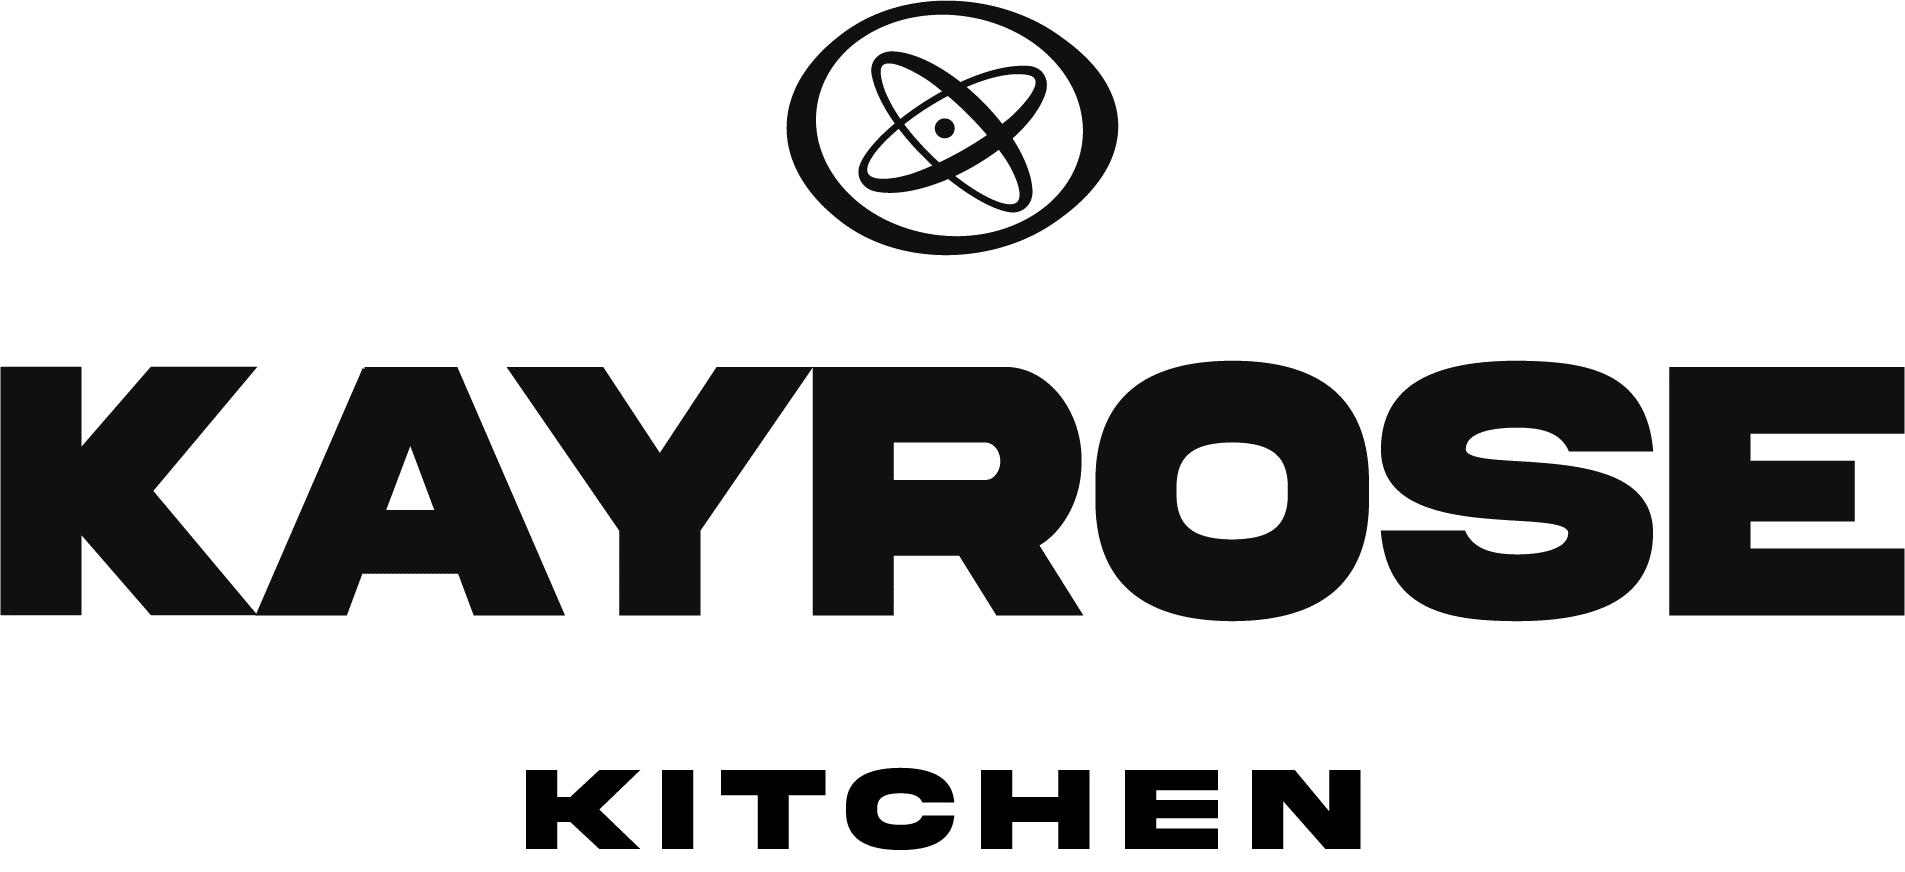 Kayrose Kitchen (1)